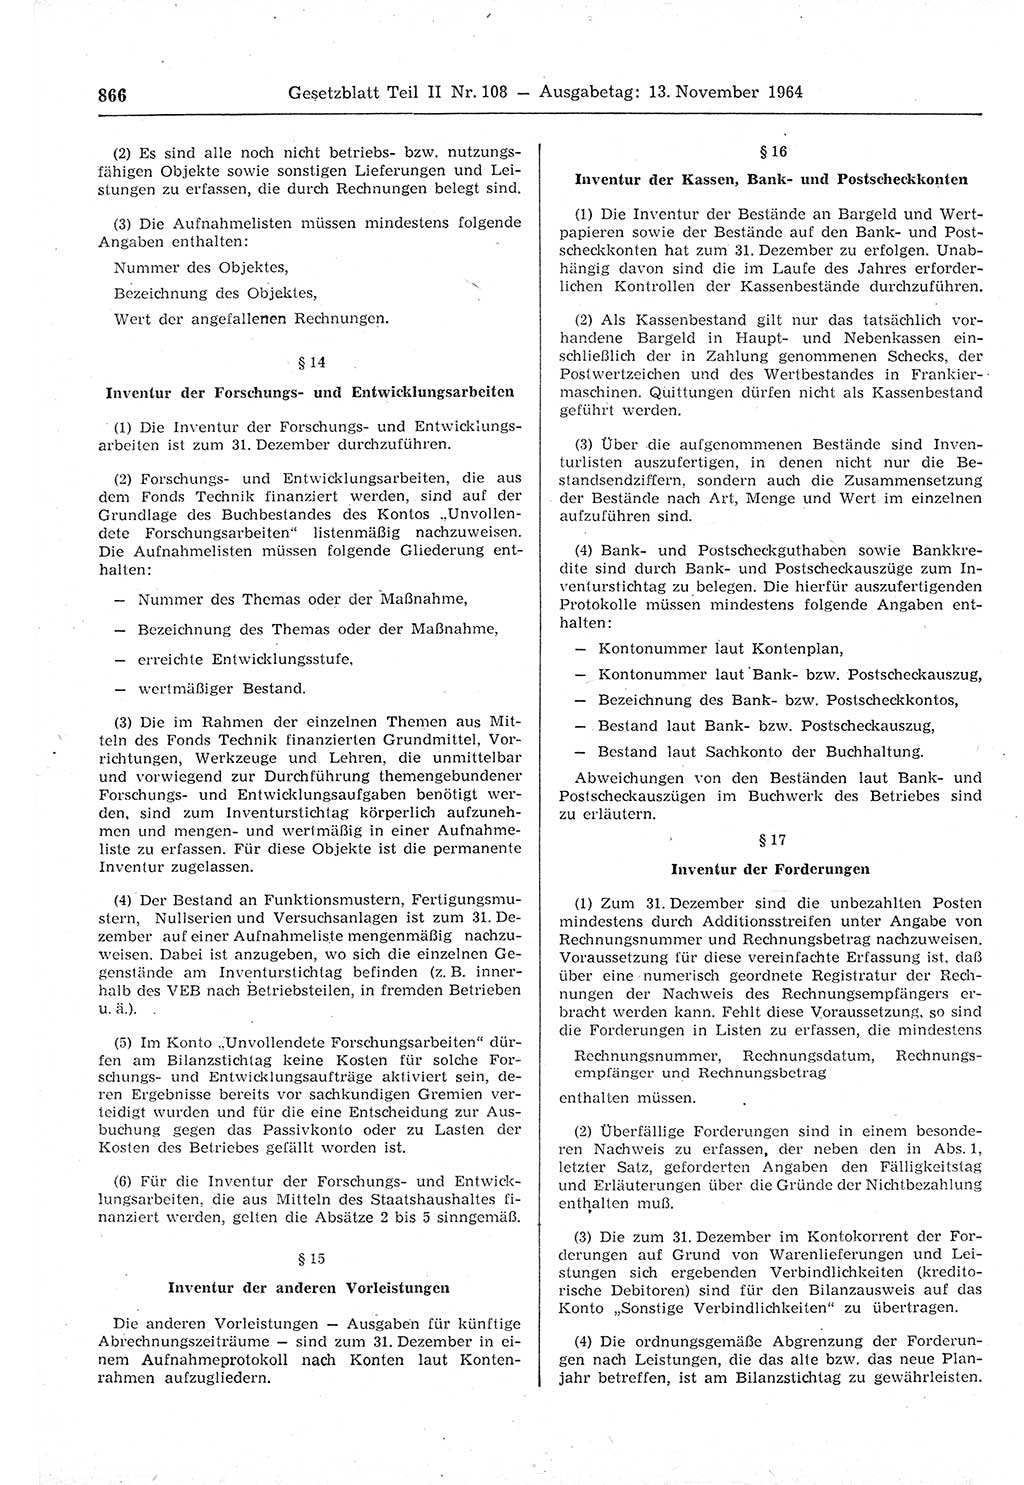 Gesetzblatt (GBl.) der Deutschen Demokratischen Republik (DDR) Teil ⅠⅠ 1964, Seite 866 (GBl. DDR ⅠⅠ 1964, S. 866)